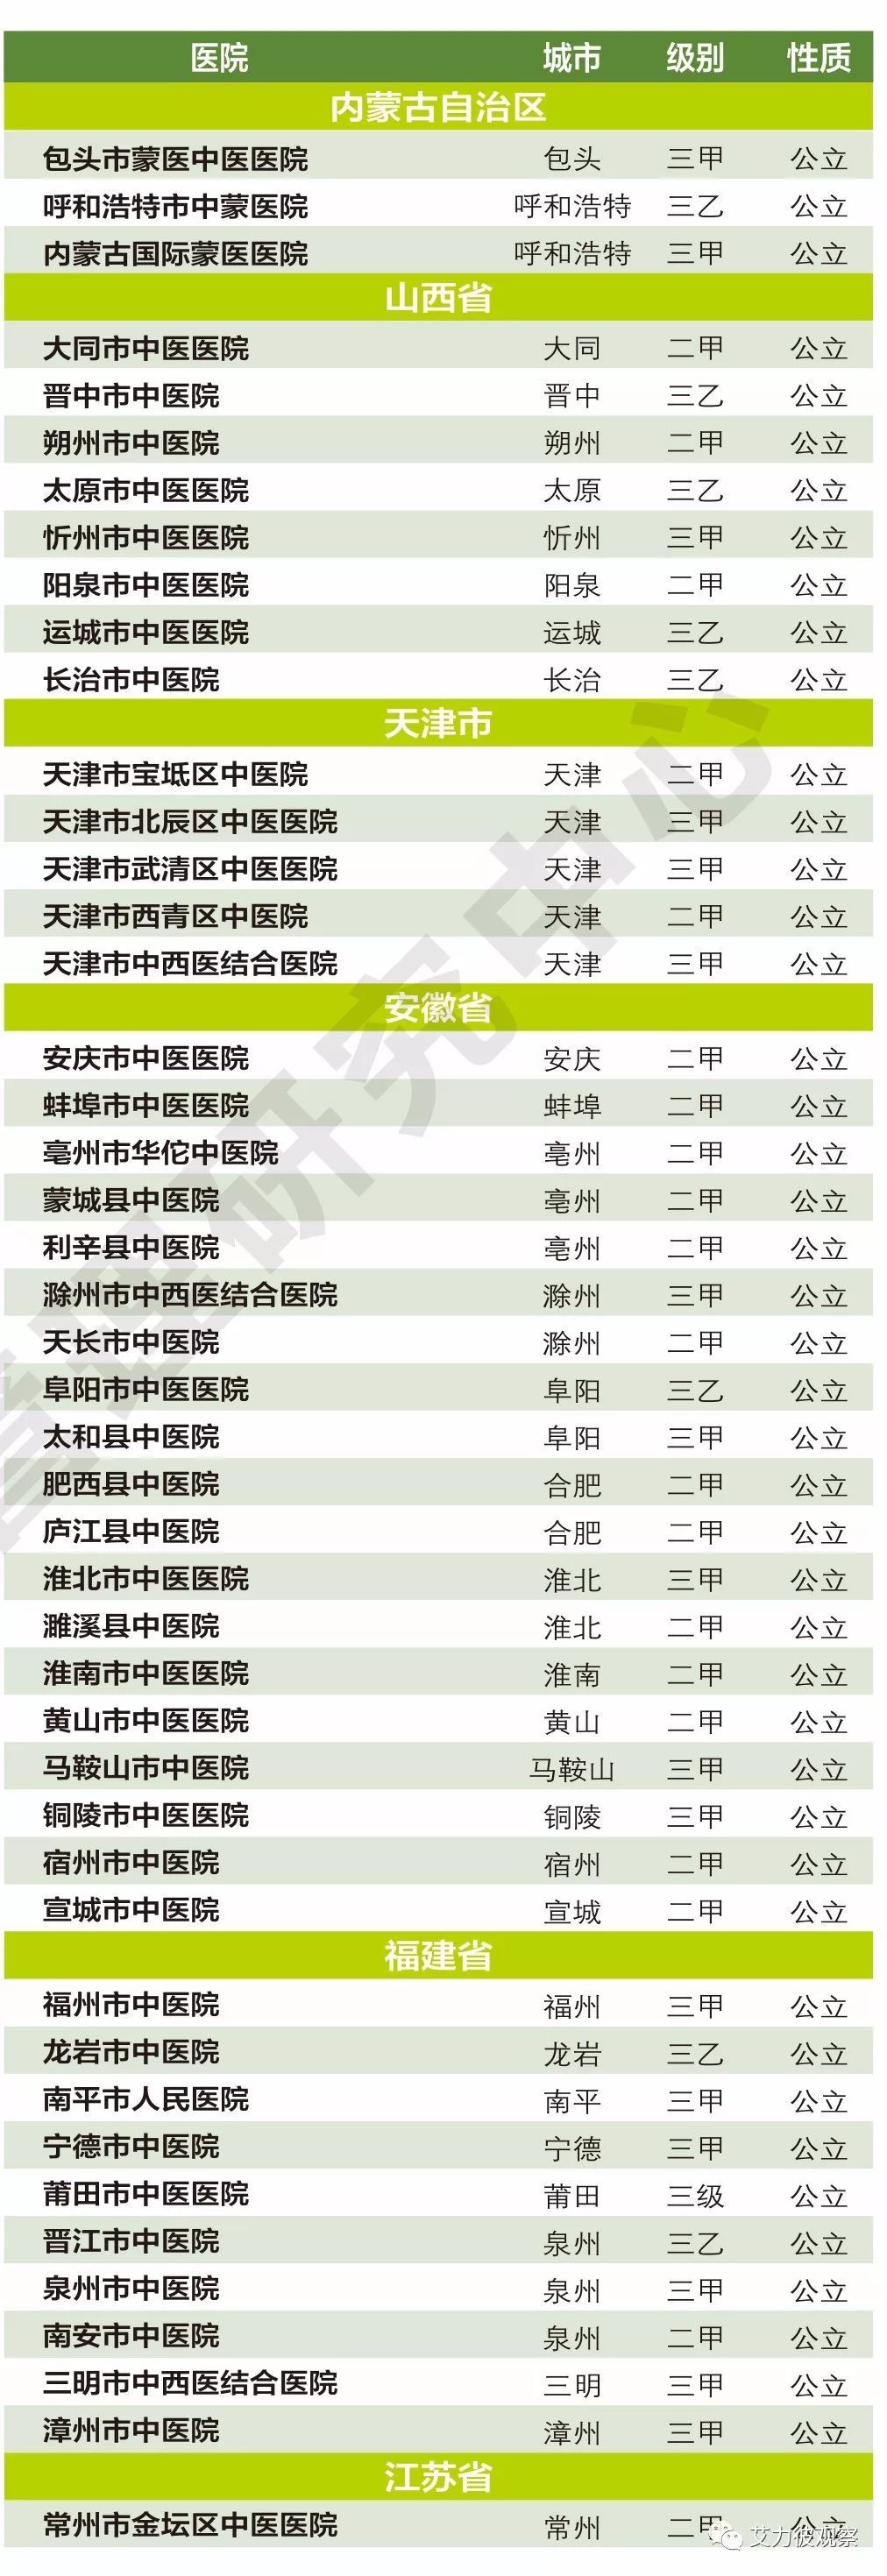 2017年中国医疗竞争力中医医院500强排行榜: